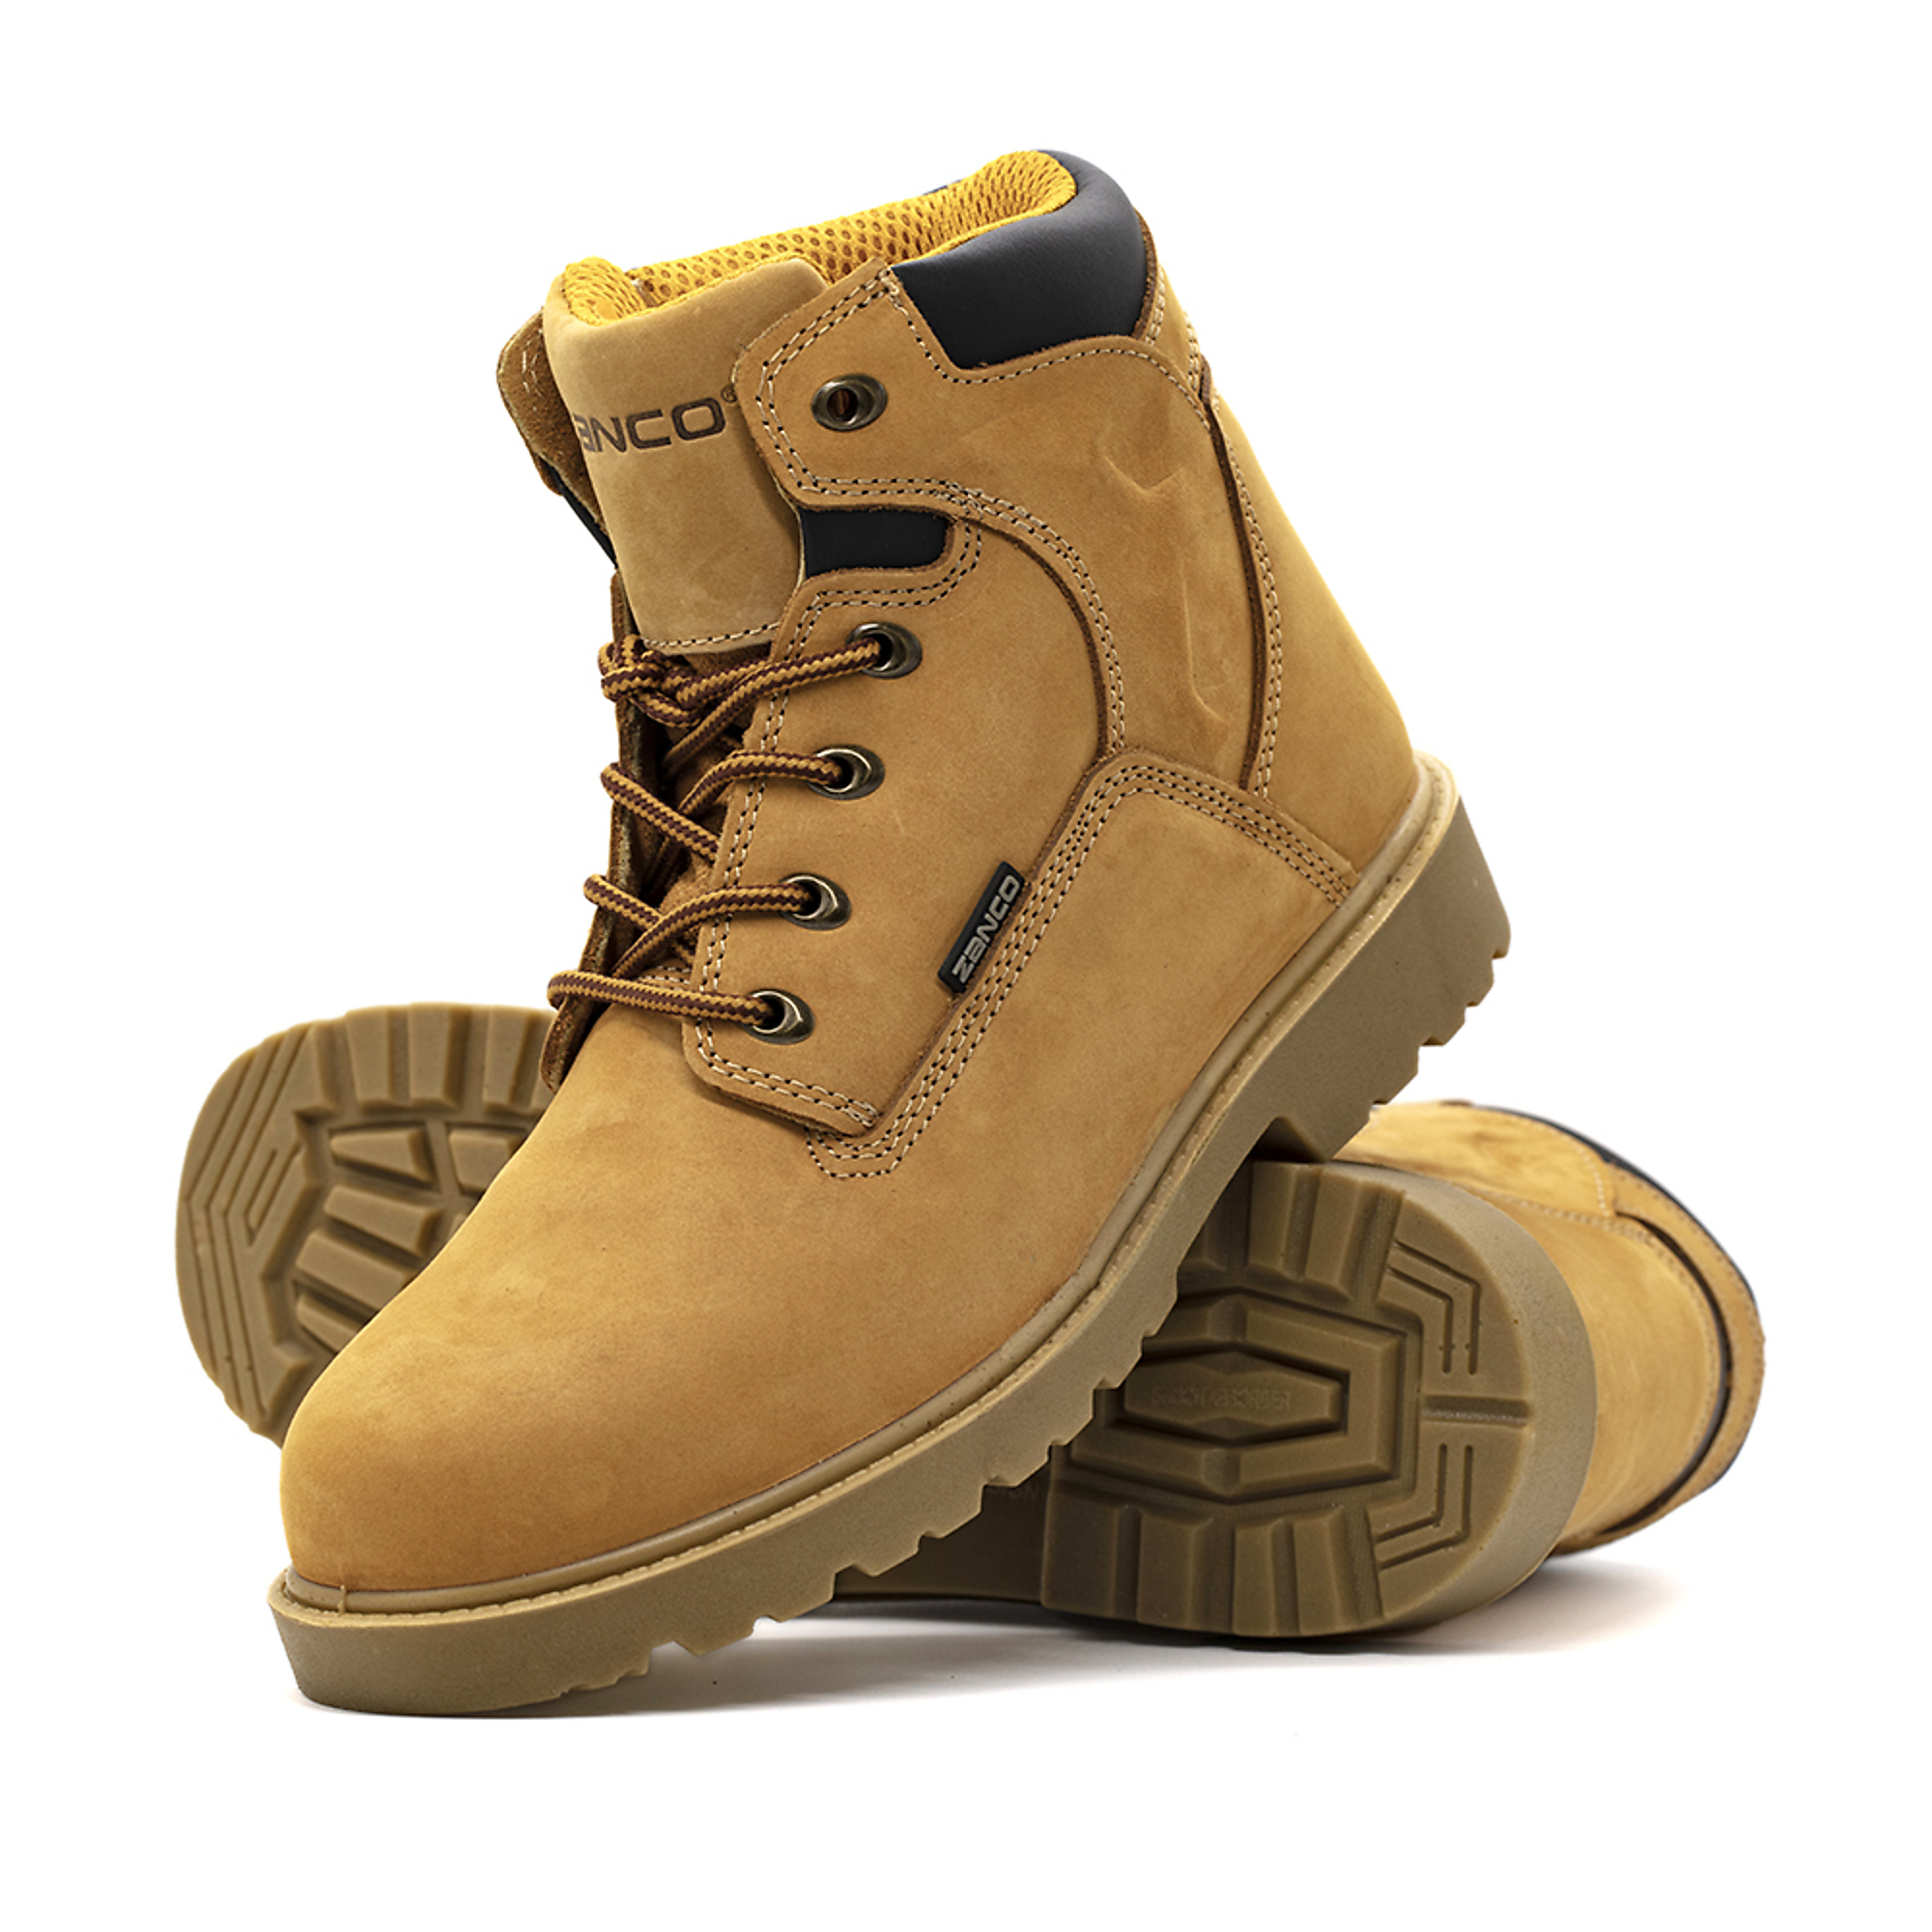 Zanco, Men's Waterproof,Steel toe,EH,Safety boots, Size 9, Width Medium, Color WHEAT, Model 7681-SE-9